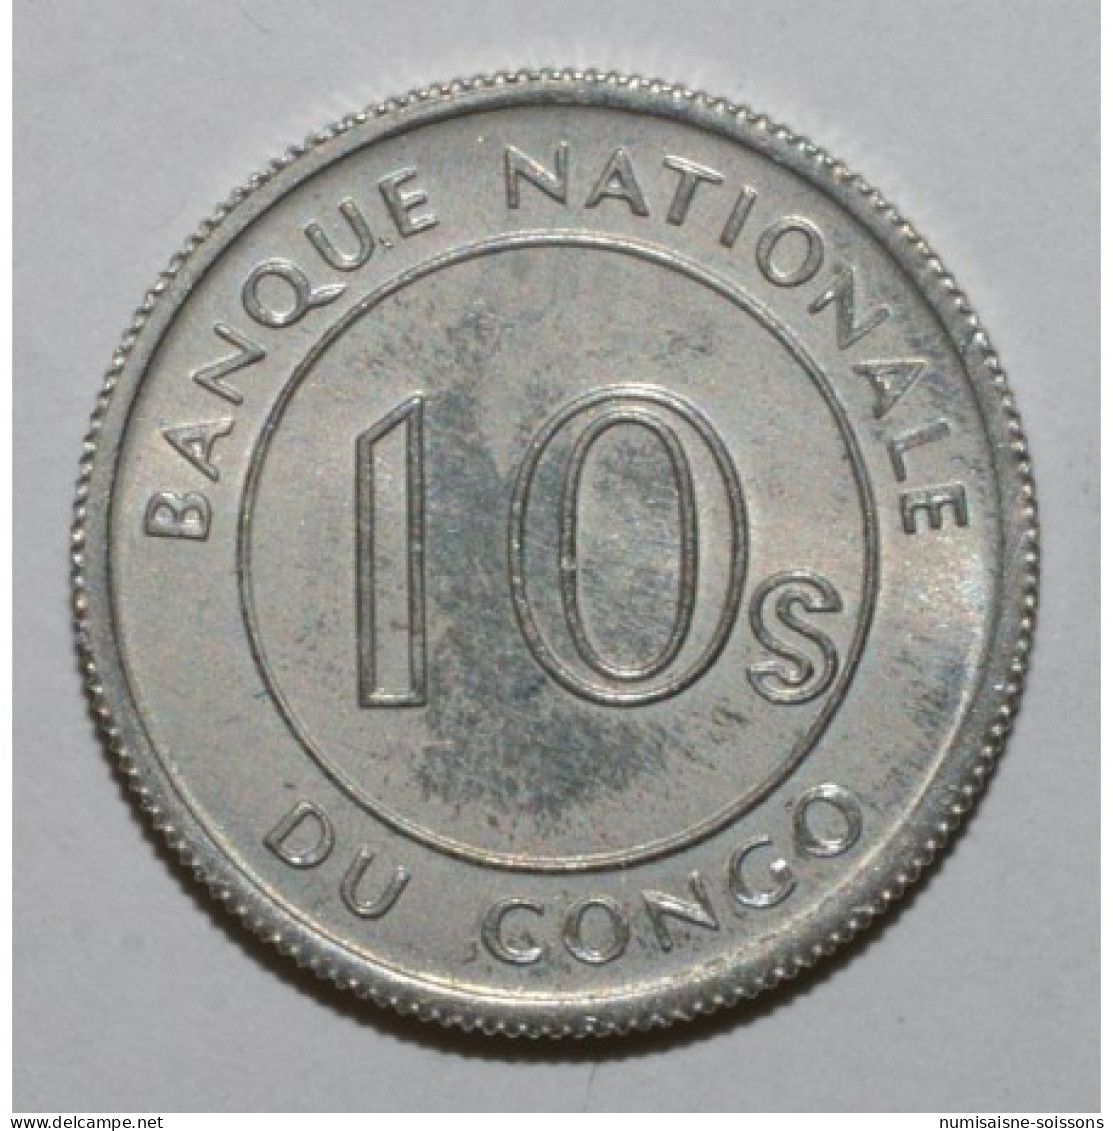 CONGO - KM 7 - 10 SENGI 1967 - Léopard - SPL - Congo (Repubblica Democratica 1964-70)